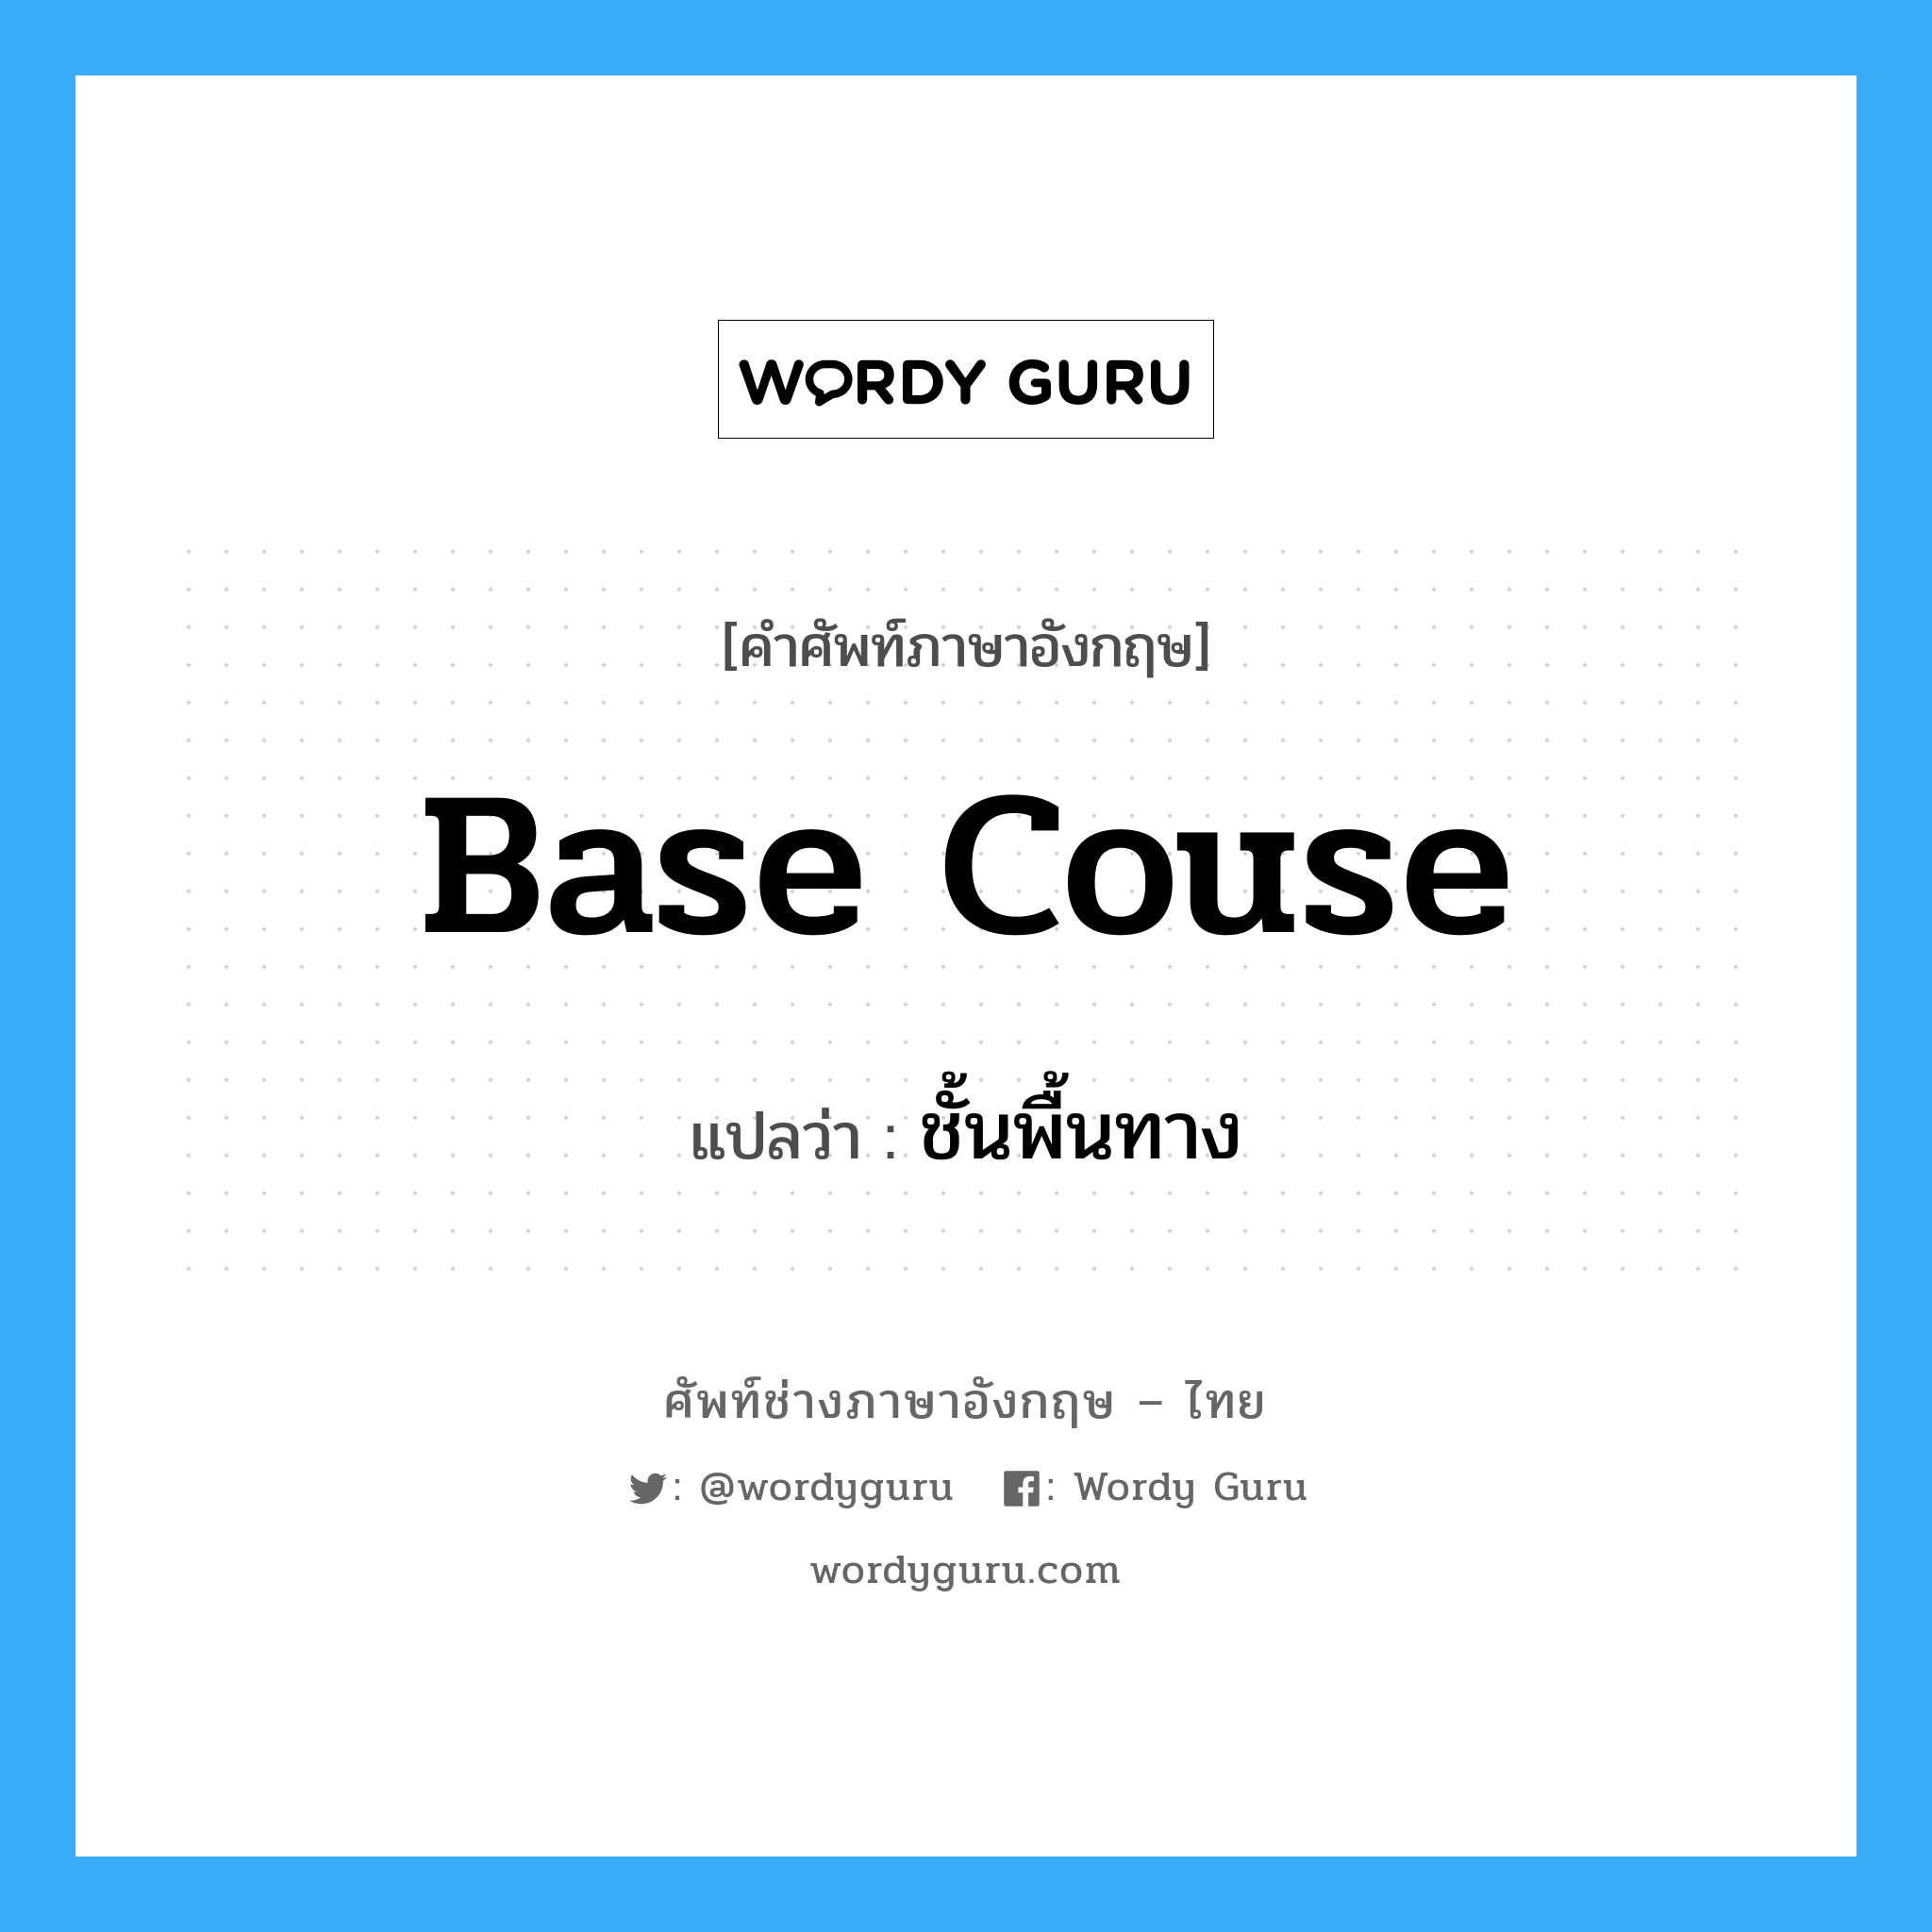 base couse แปลว่า?, คำศัพท์ช่างภาษาอังกฤษ - ไทย base couse คำศัพท์ภาษาอังกฤษ base couse แปลว่า ชั้นพื้นทาง